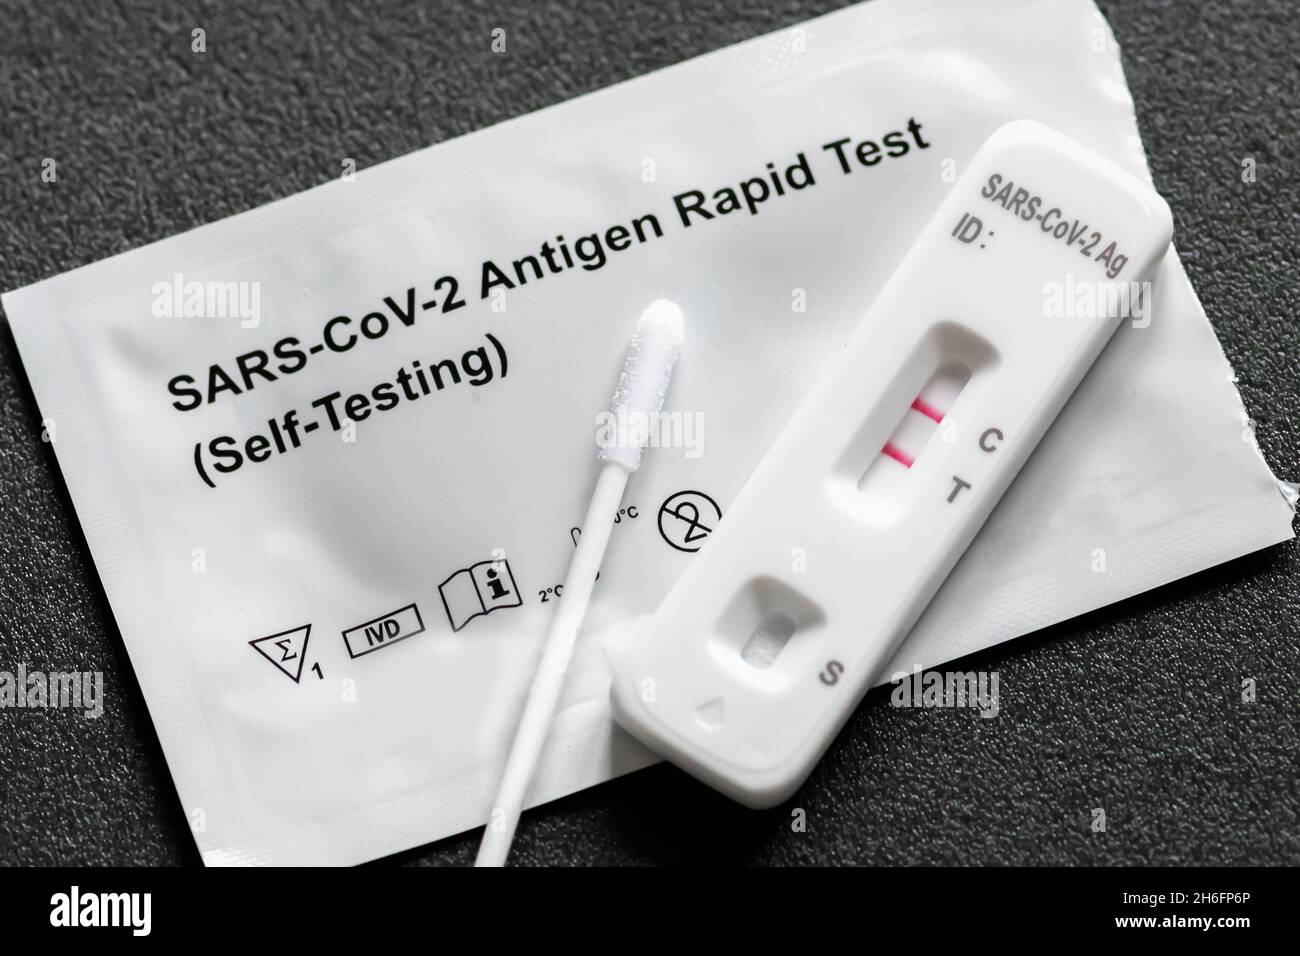 Kit per test antigene positivo Covid-19 per test autodiagnostico, test rapido dell'antigene coronavirus in una fase, tampone saliva, 1 scatola per test, close up Foto Stock